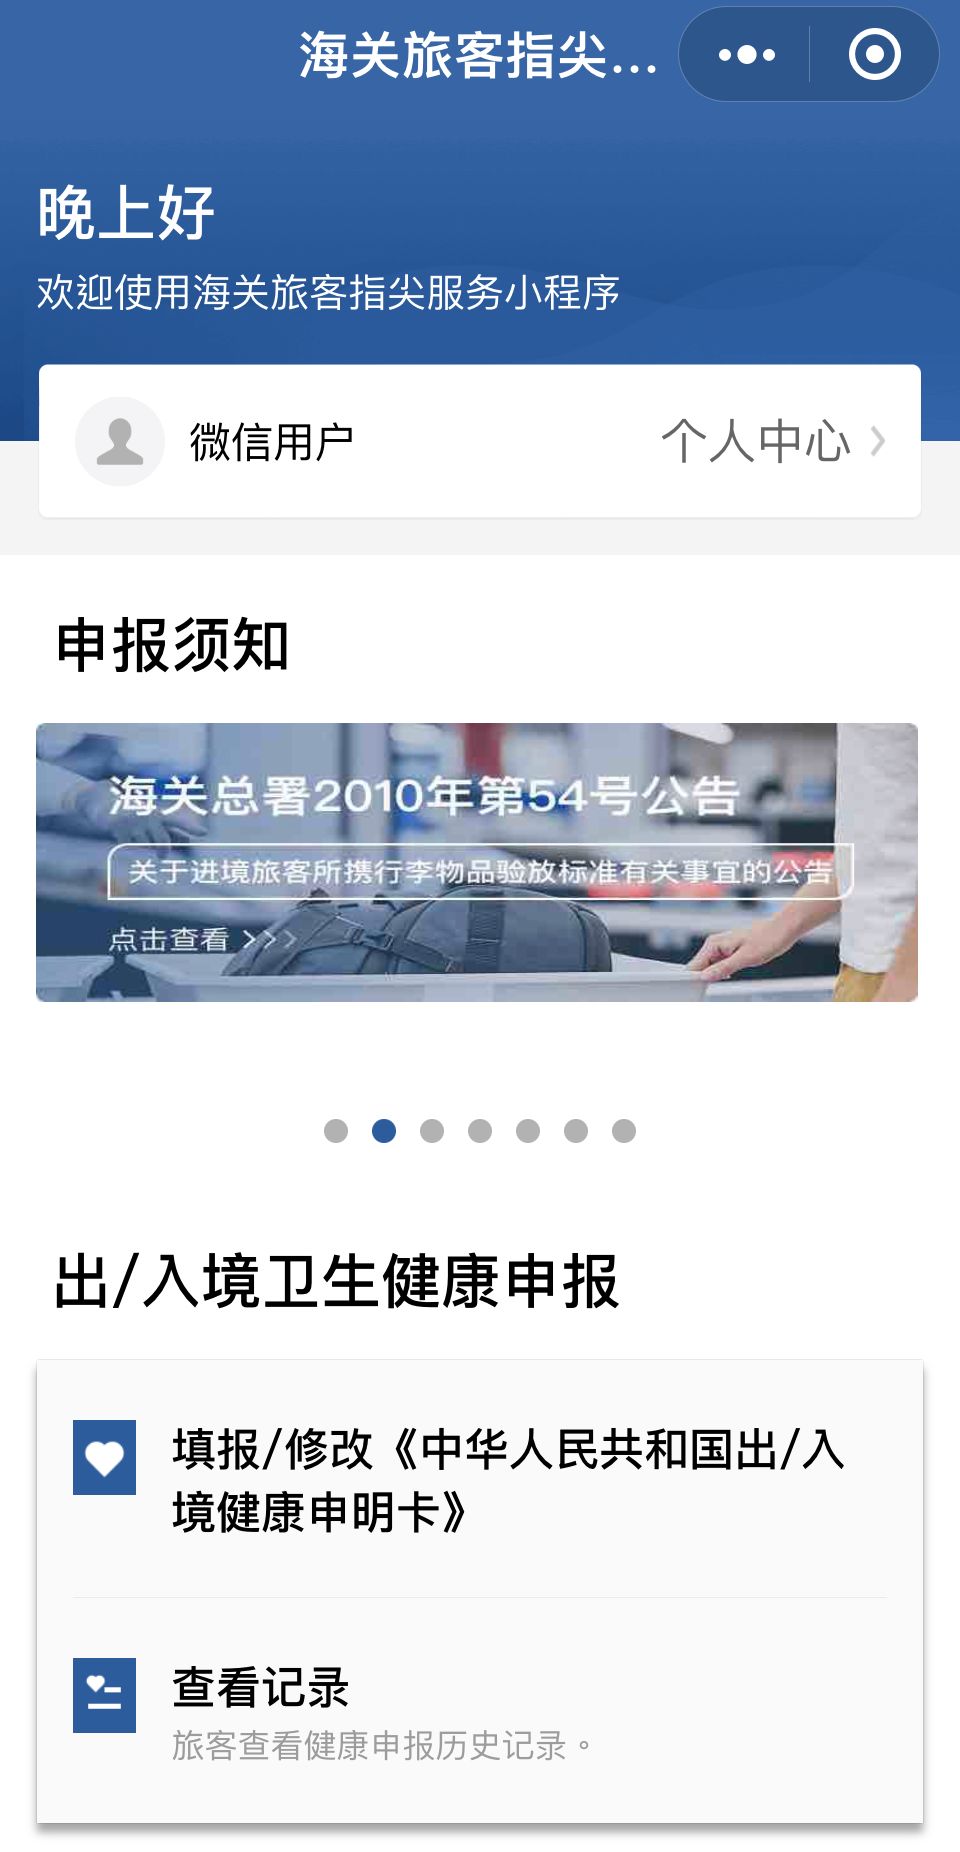 現時旅客不論是前往內地還是返回香港，都需要掃描俗稱「黑碼」的《中華人民共和國出/入境健康申明卡》。